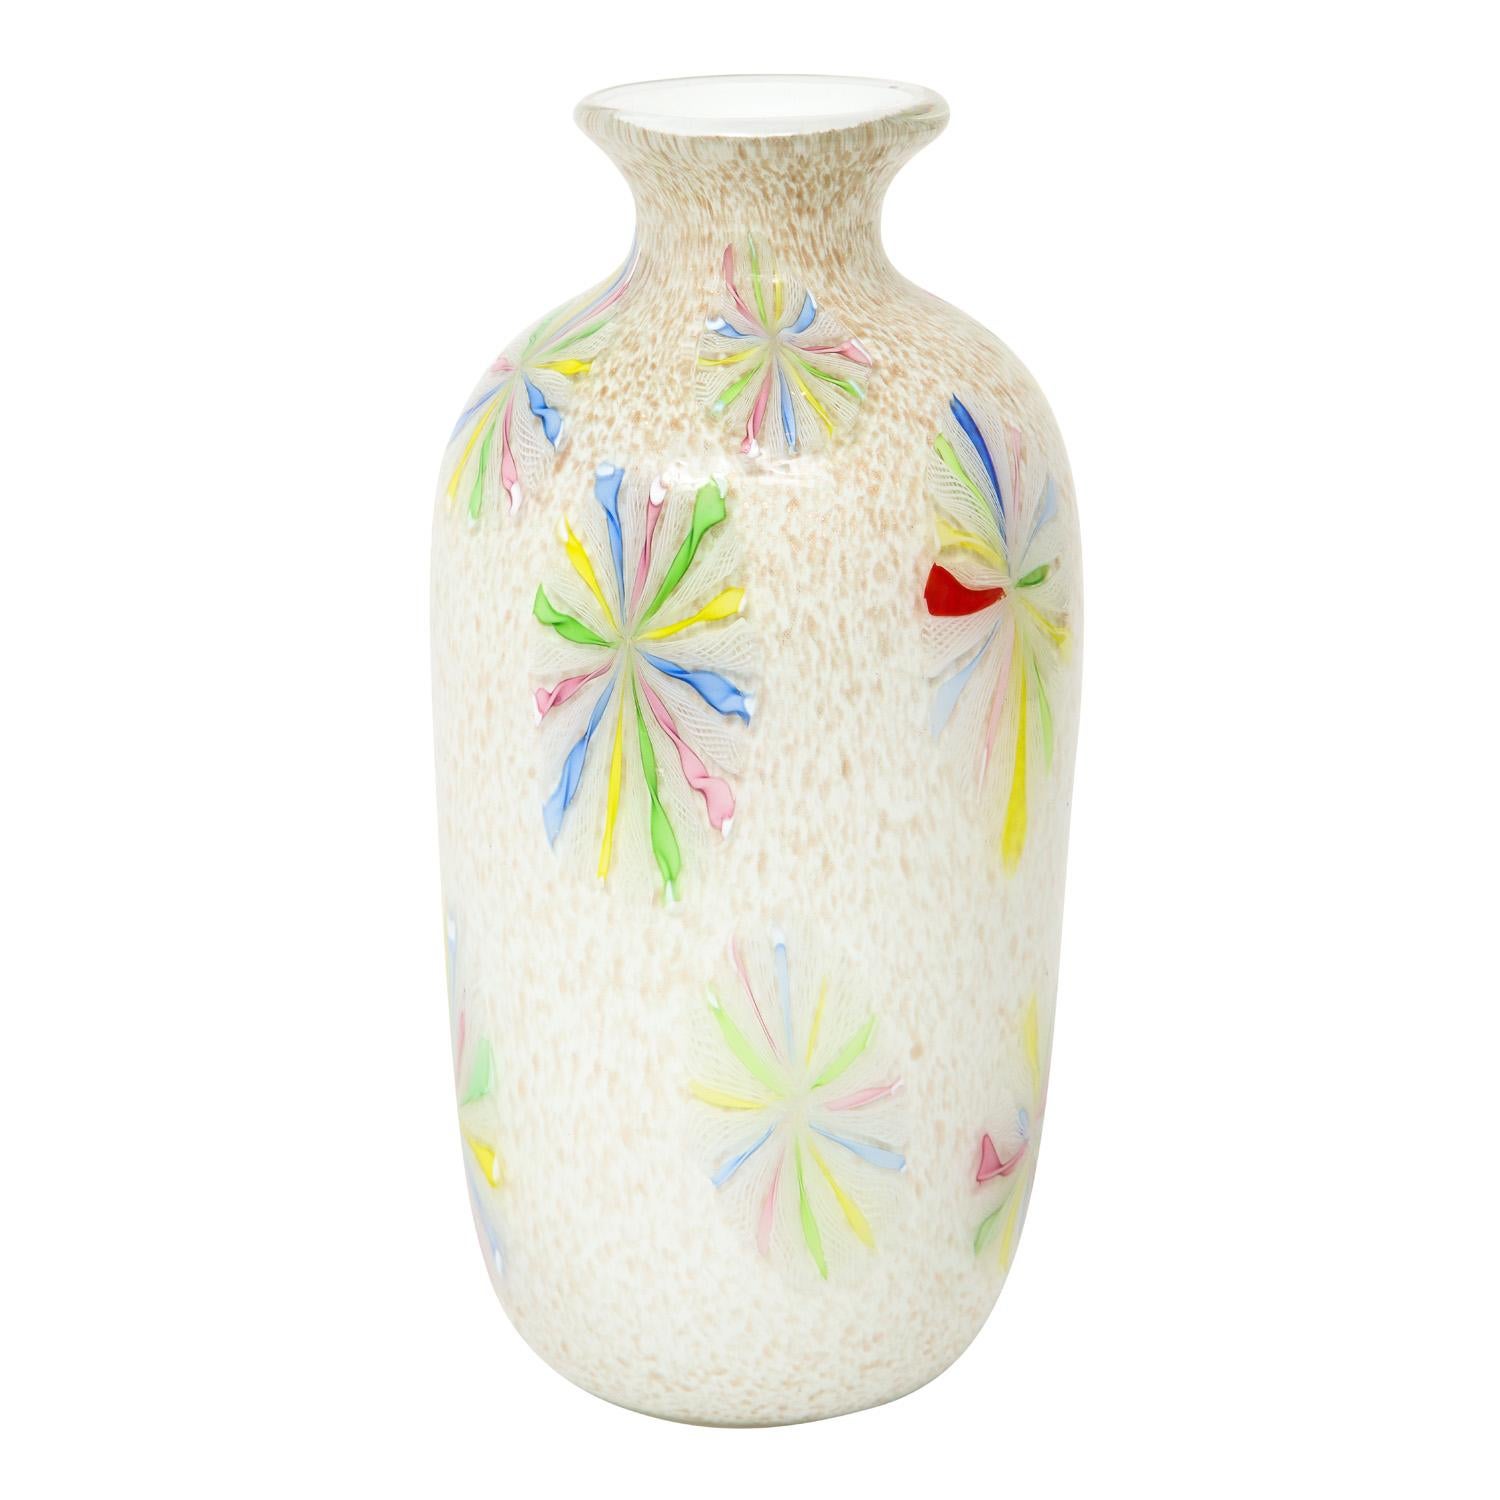 Vase aus mundgeblasenem Glas, farbenfrohe Murrhine über weißem Glas mit Goldeinschlüssen, von Arte Vetraria Muranese oder A.V.E.M., Murano Italien, 1950er Jahre. Diese Vase ist wie ein Juwel. Die goldenen Einschlüsse funkeln im Inneren des